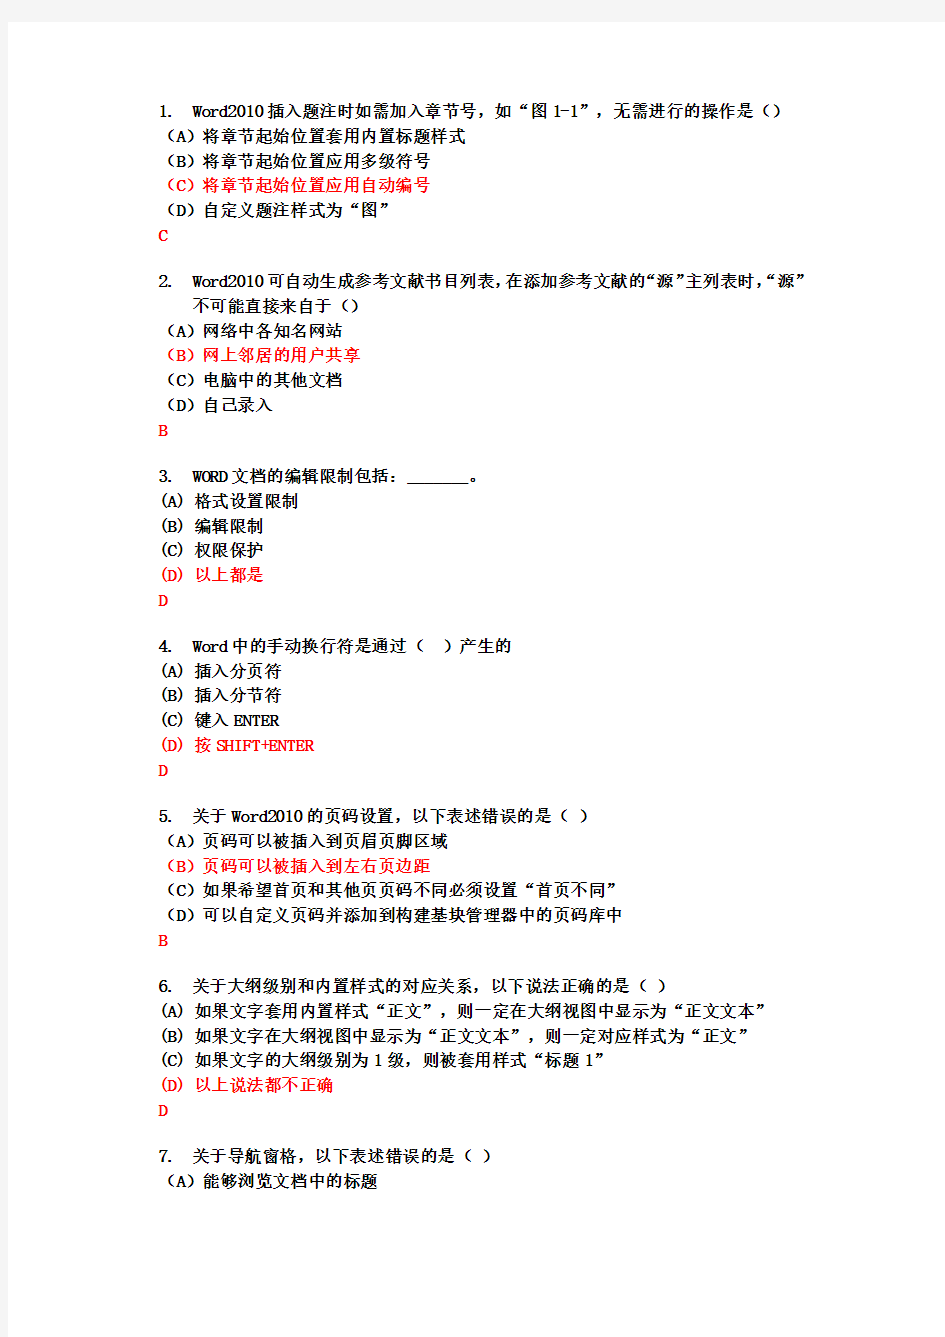 浙江省计算机office2010AOA二级选择题判断题(全)